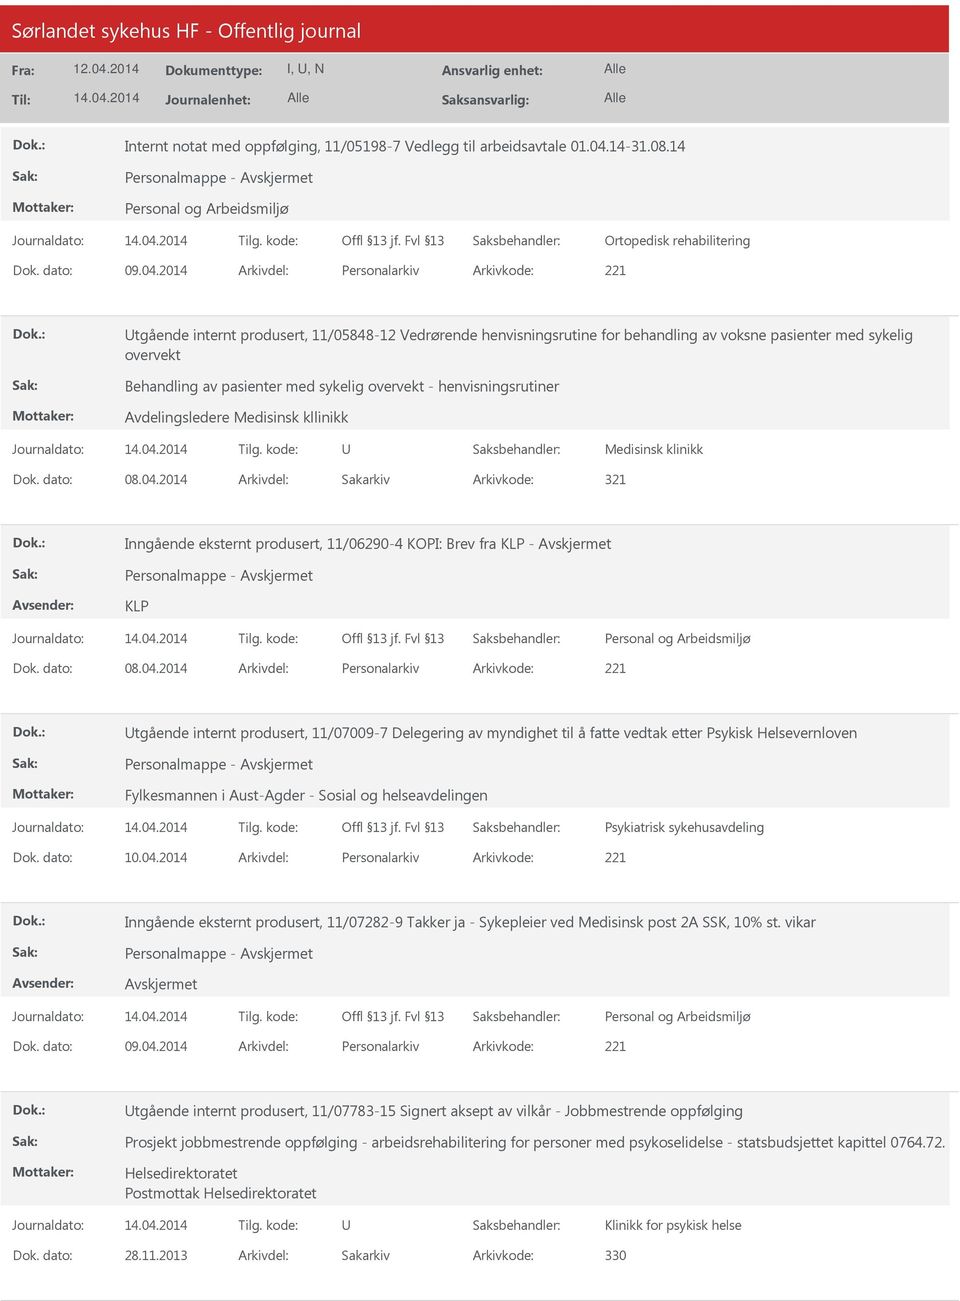 2014 Arkivdel: Personalarkiv Arkivkode: 221 tgående internt produsert, 11/05848-12 Vedrørende henvisningsrutine for behandling av voksne pasienter med sykelig overvekt Behandling av pasienter med